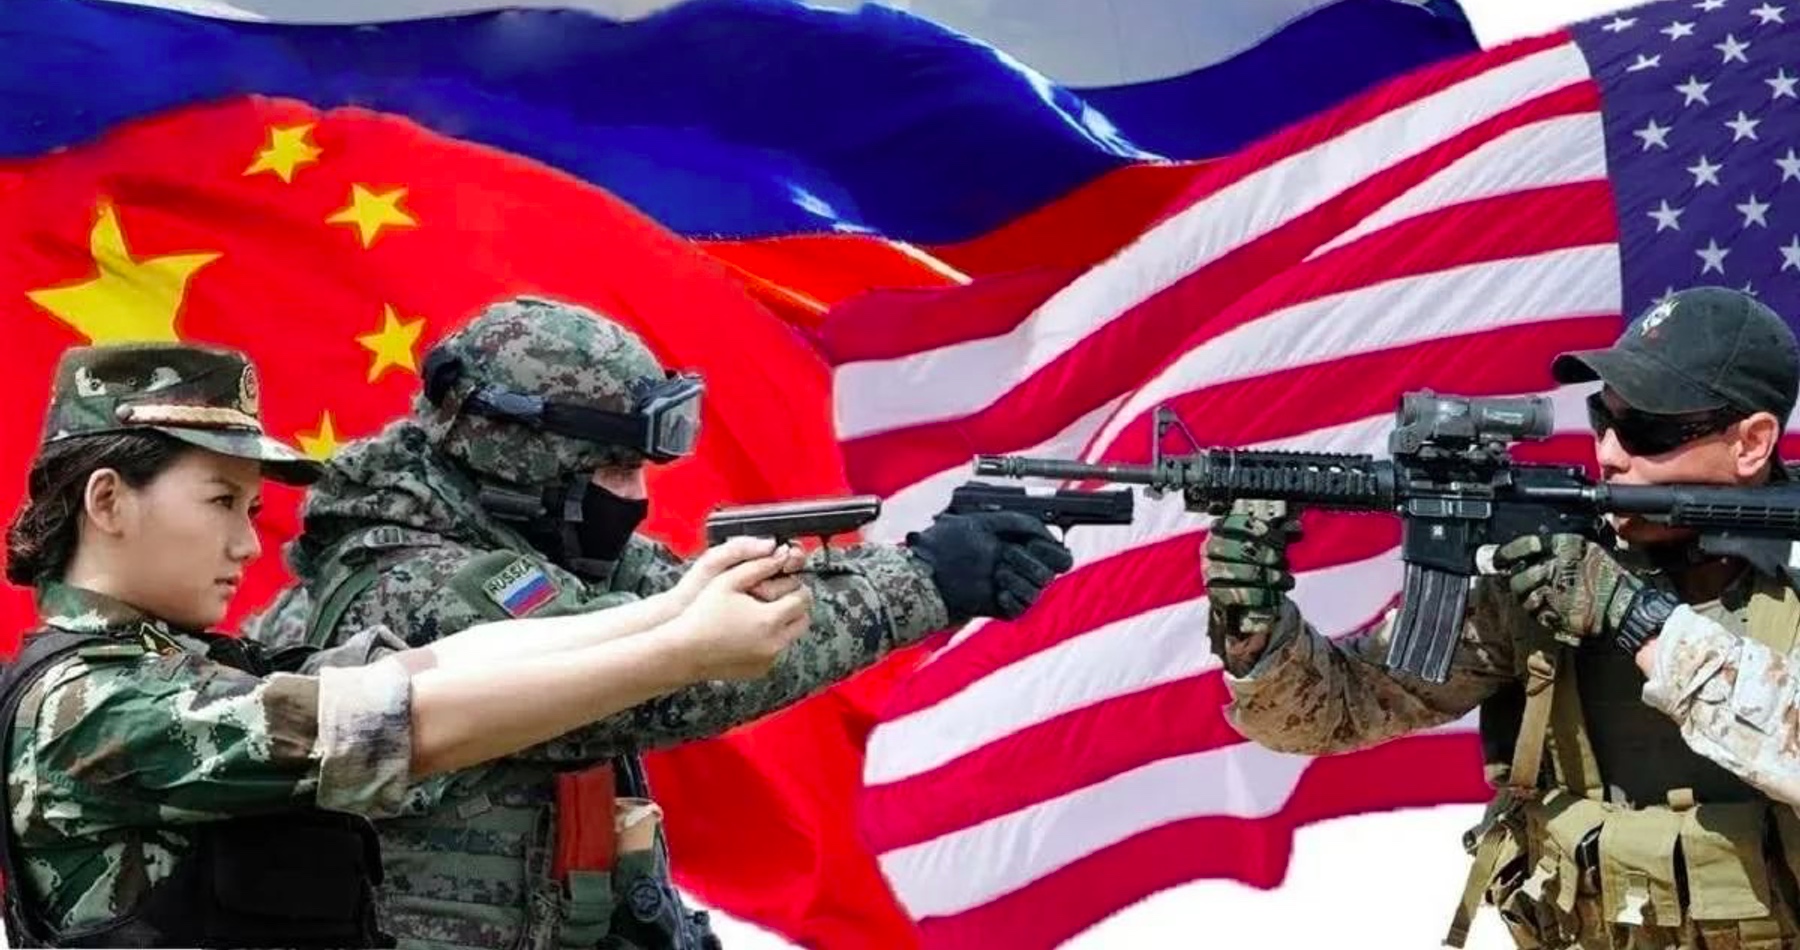 Američania vyzývajú Čínu, aby využila svoj vplyv a odradila Rusko od agresie na Ukrajine